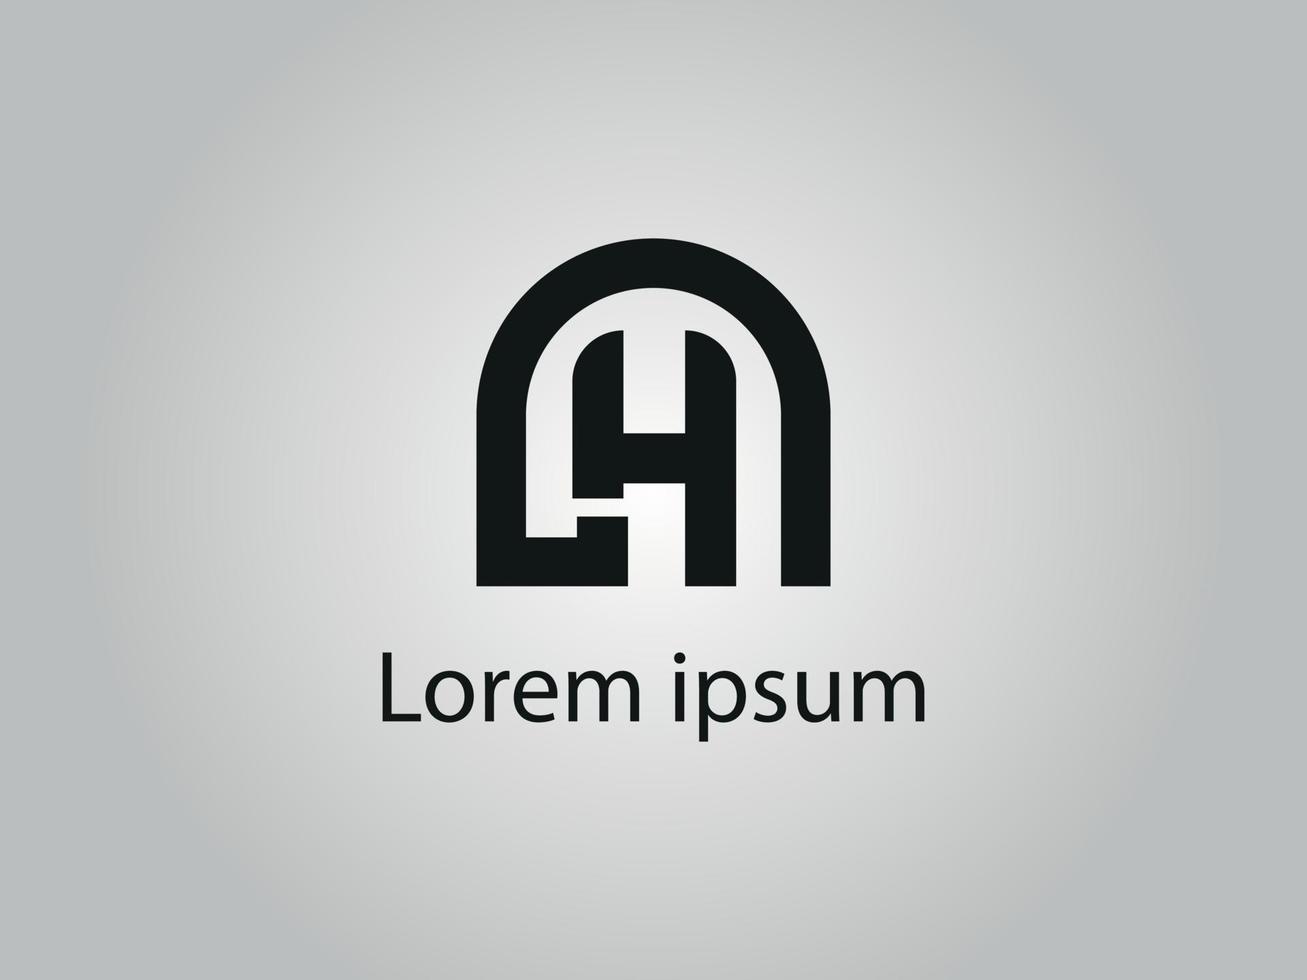 archivo de vector libre de diseño de logotipo lh